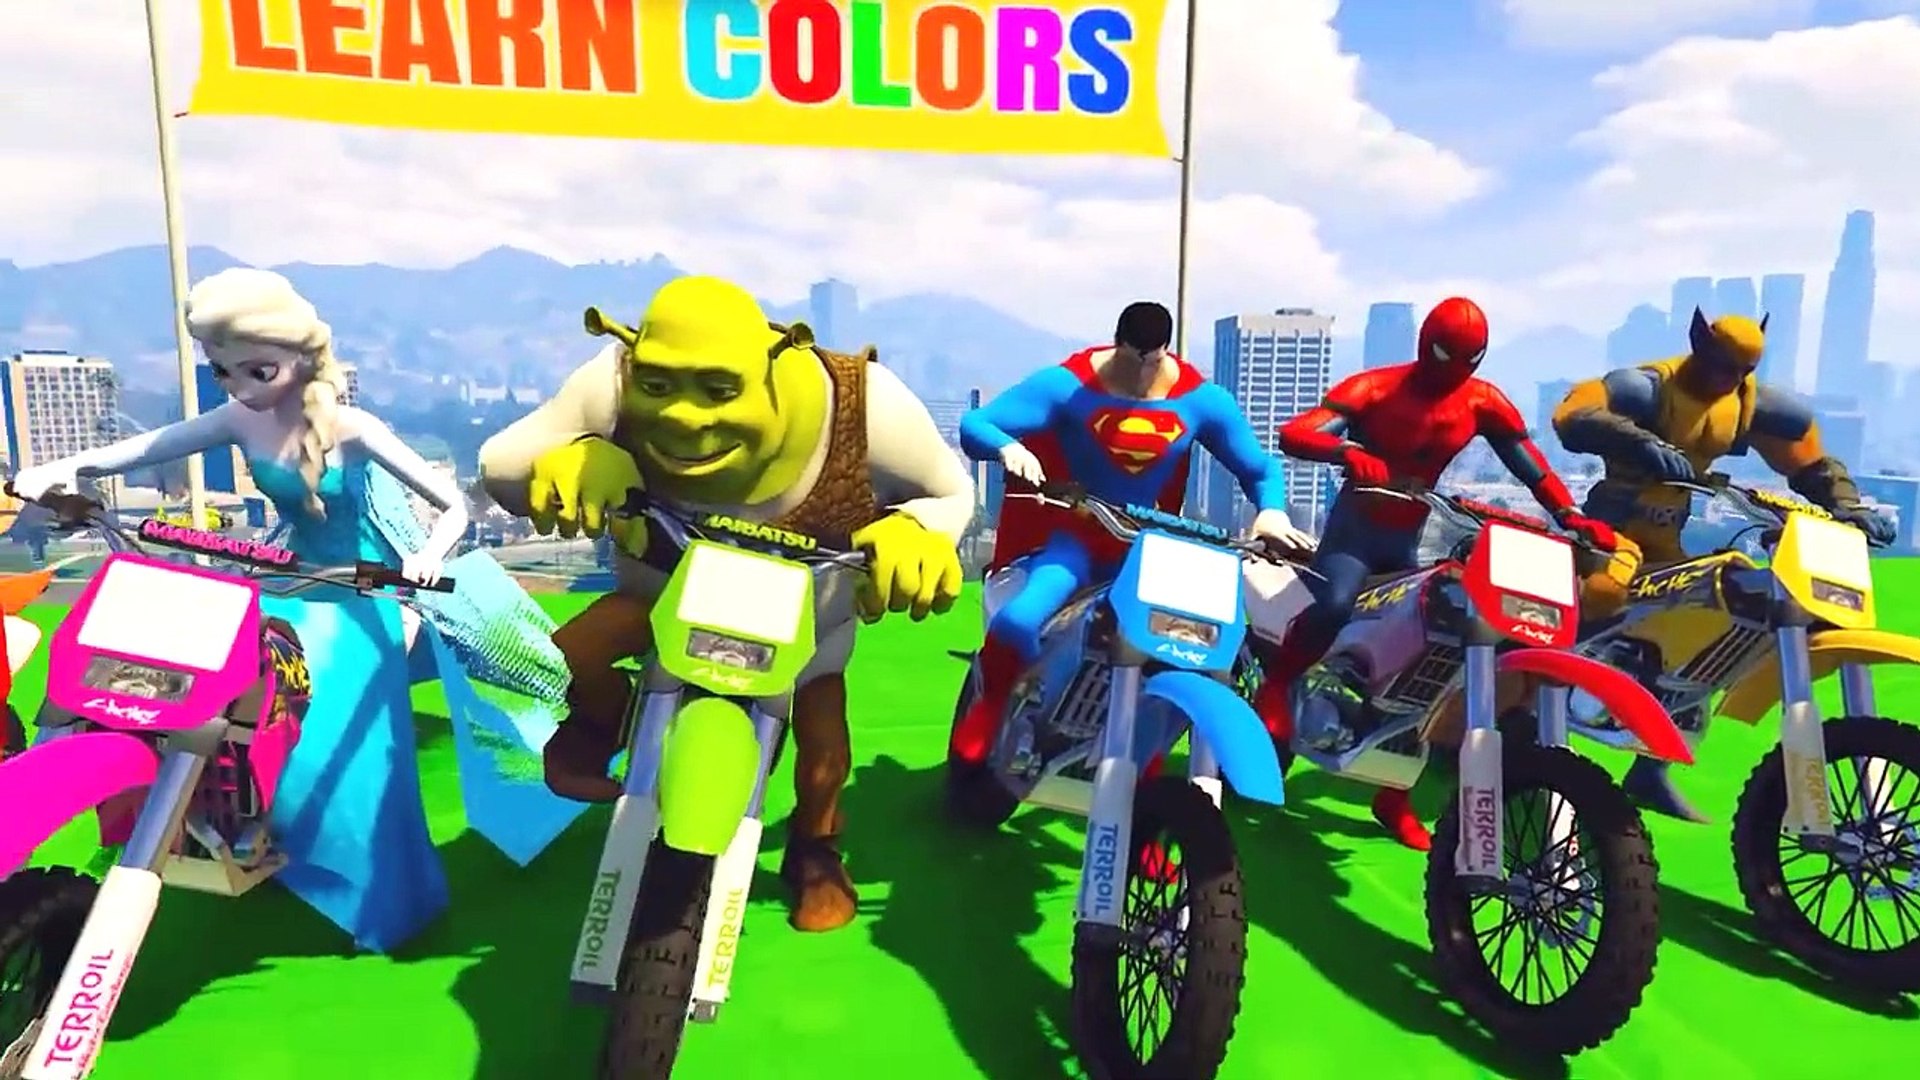 Aprende los colore jugando con motos y tus personajes favoritos - video  Dailymotion